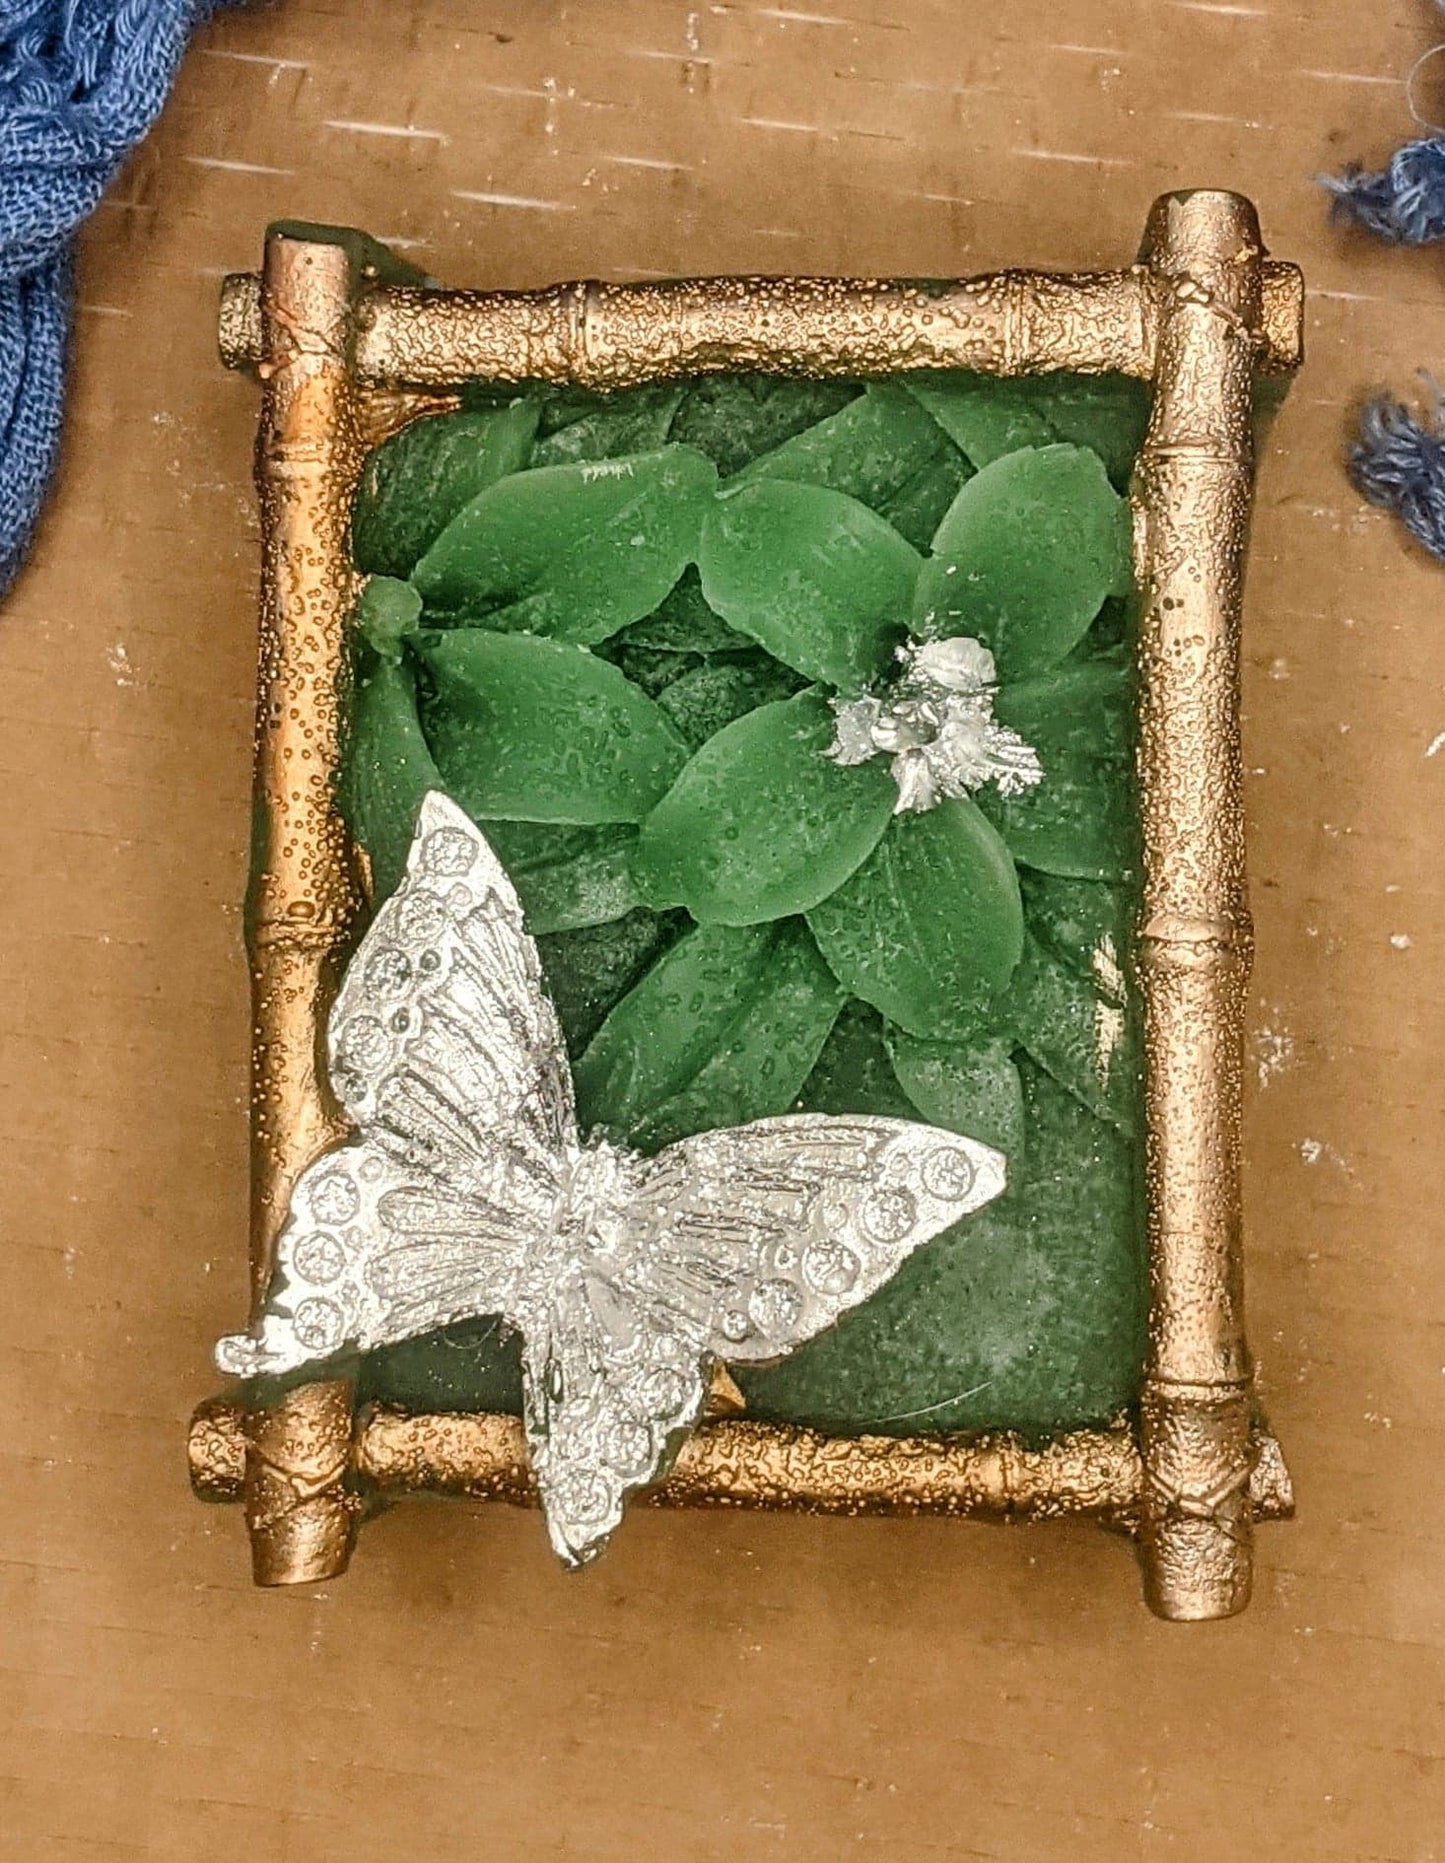 Framed Butterfly